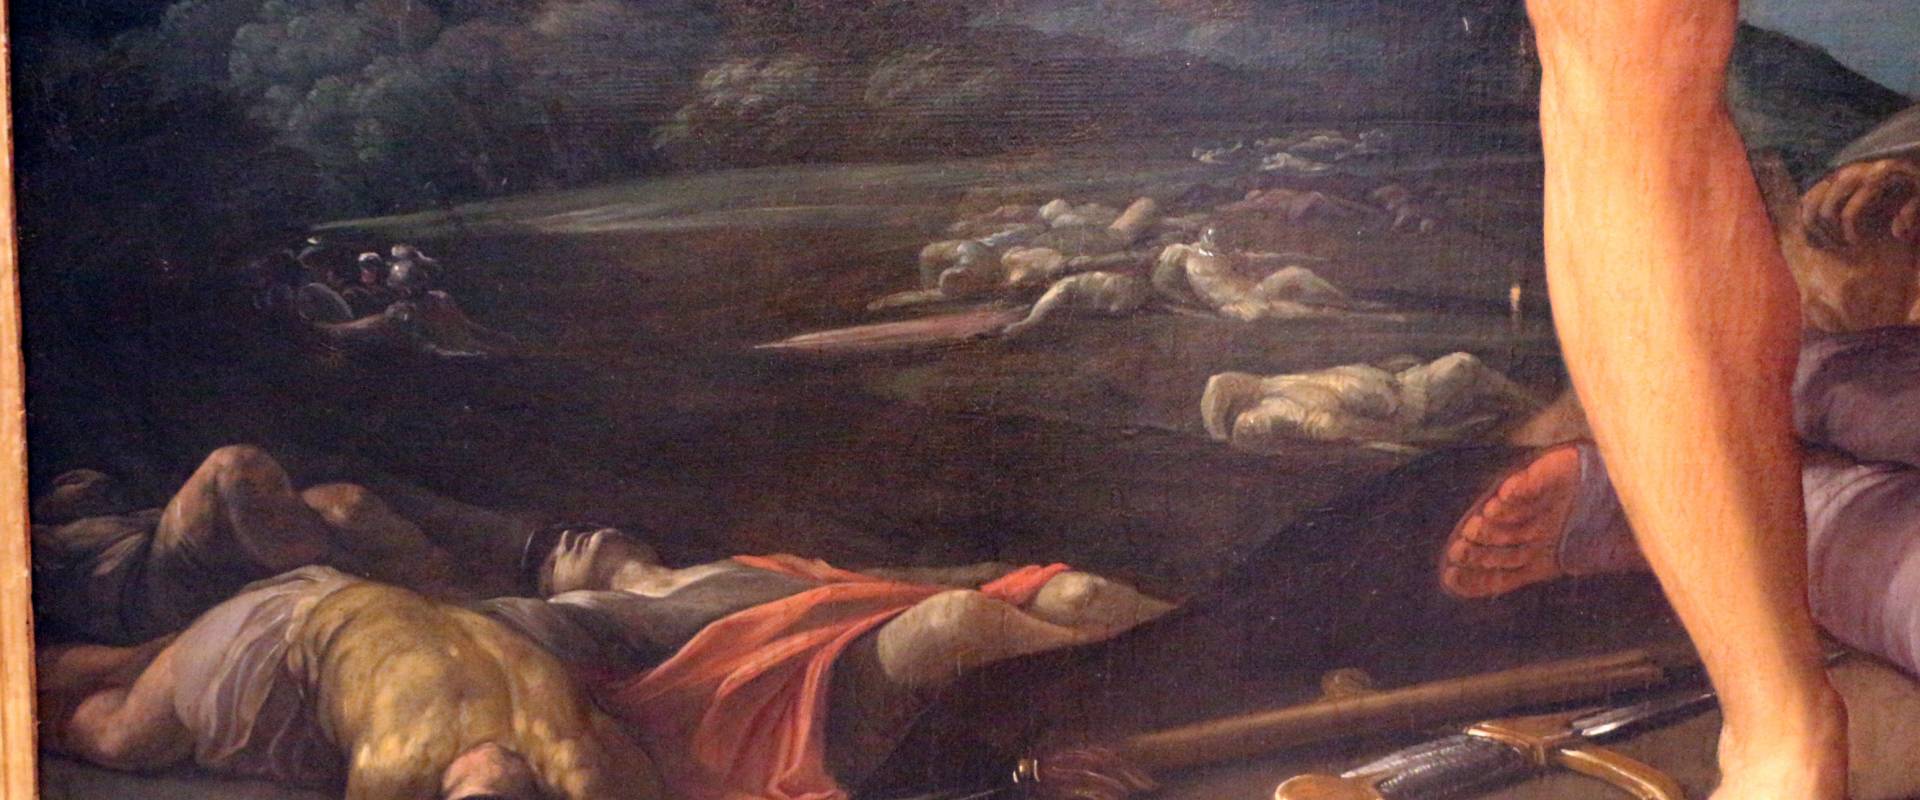 Guido reni, sansone vittorioso, 1617-19 ca., dal palazzo pubblico, 03 foto di Sailko